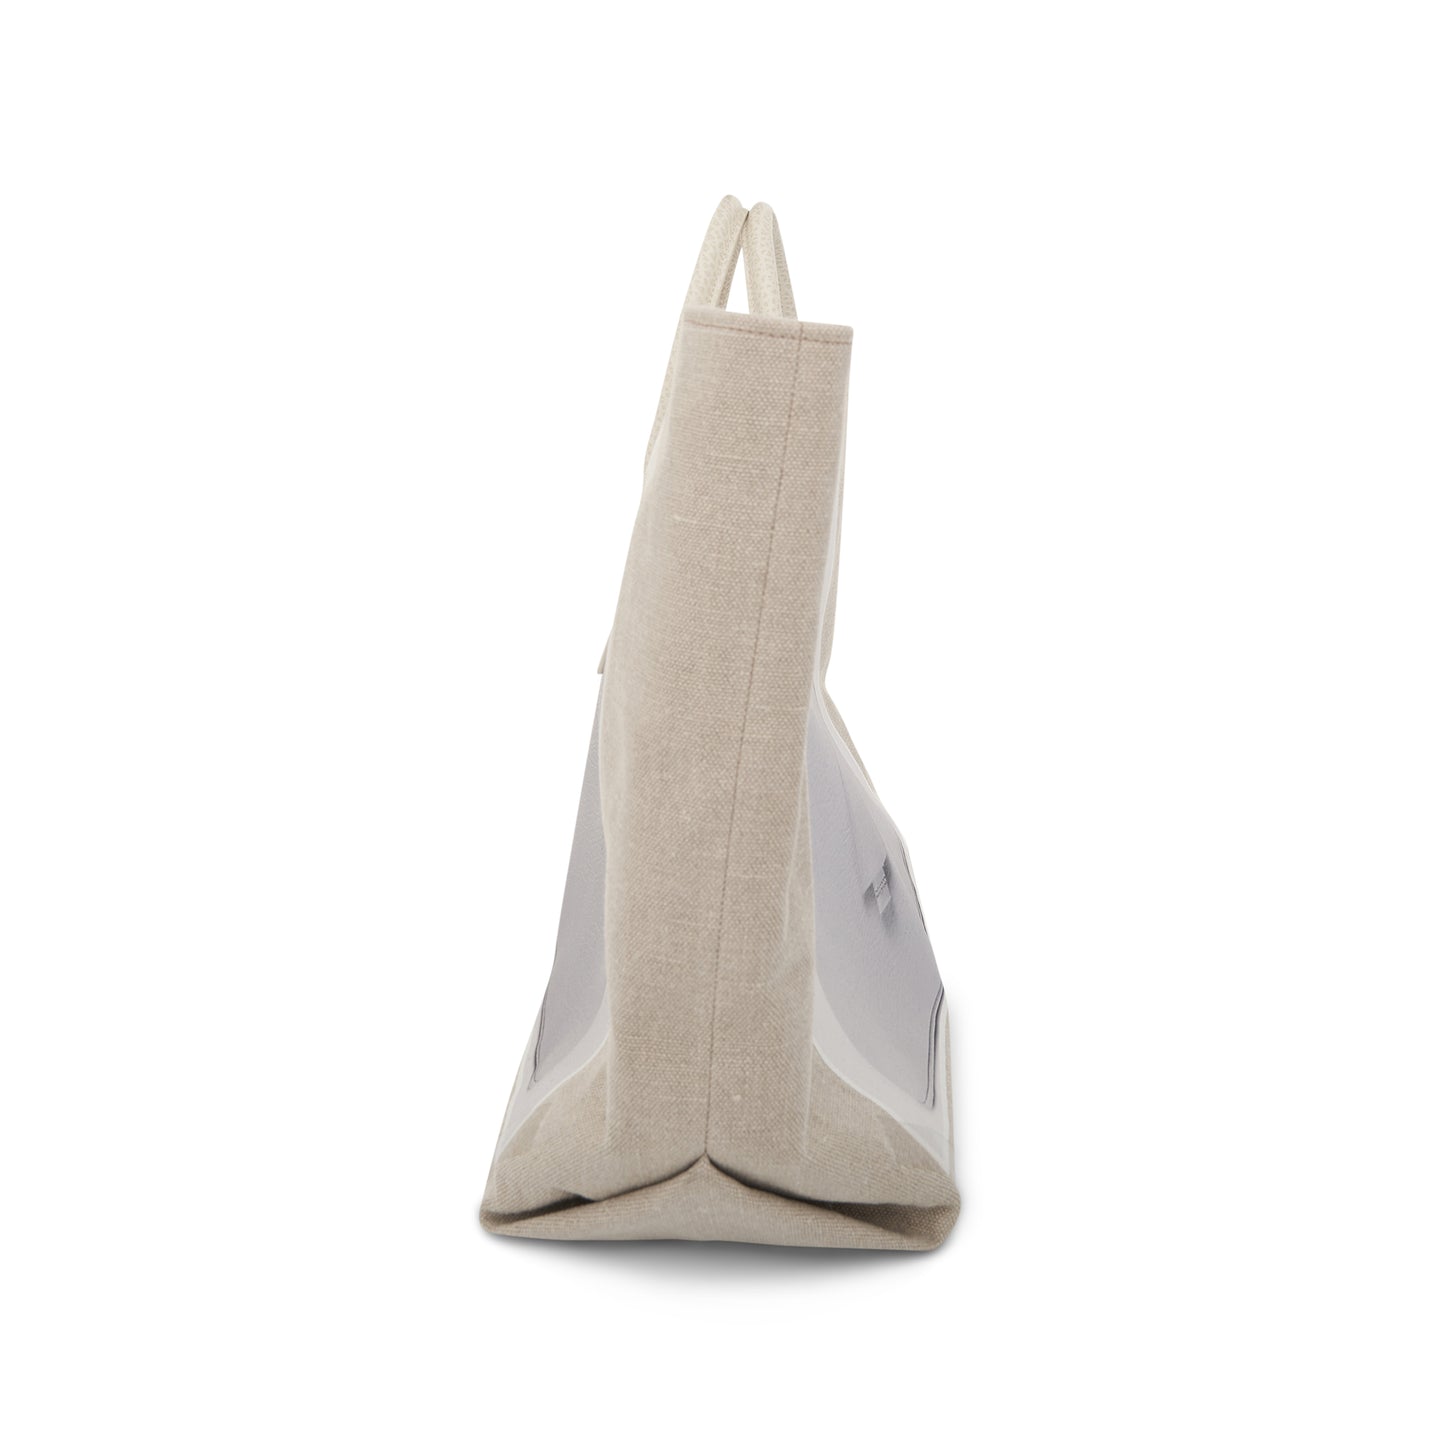 Trompe L'Oeil 5AC Tote Bag in Natural/Grey